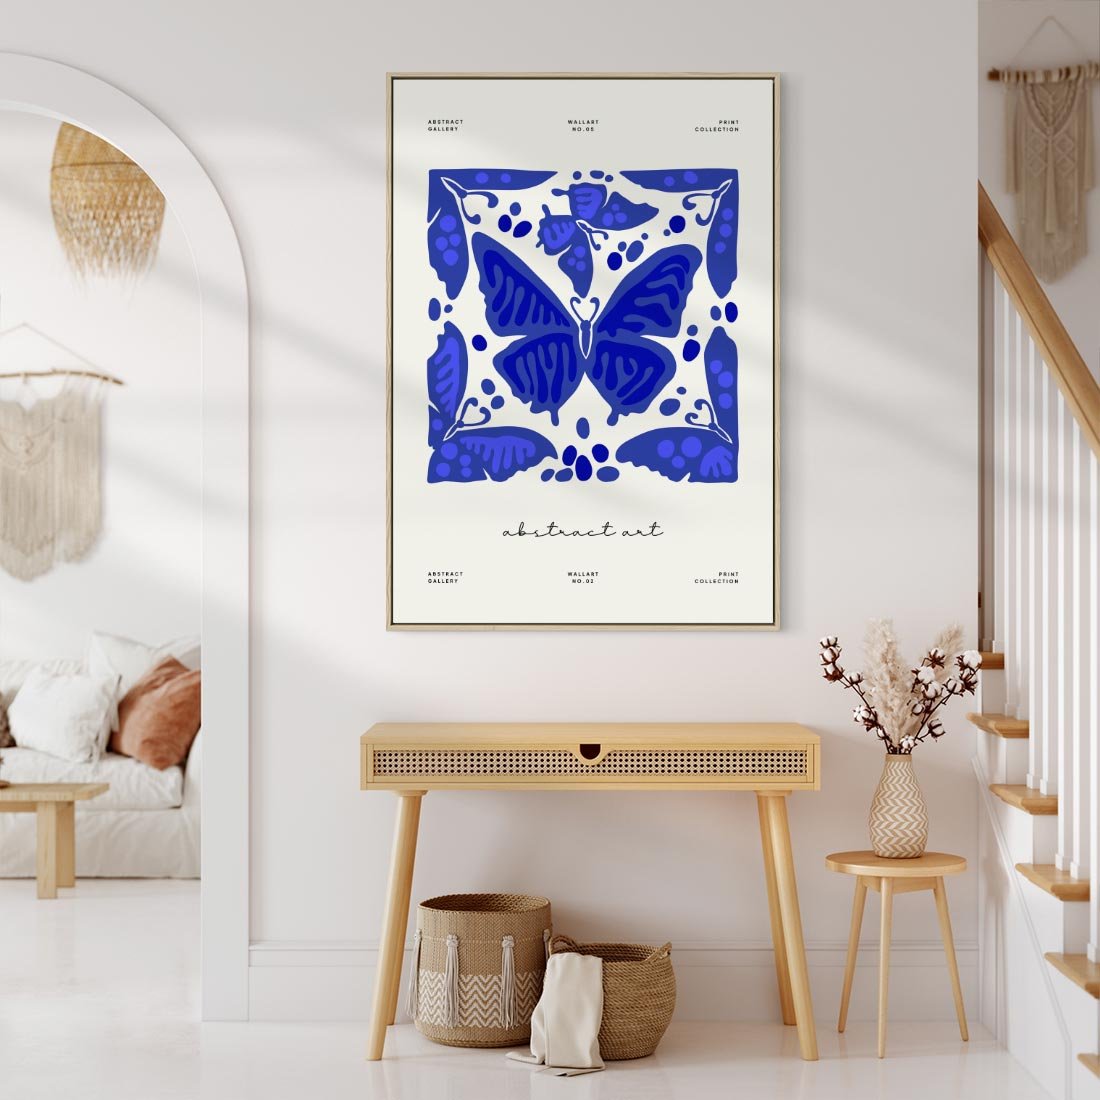 Obraz w ramie 50x70 - Wibracje Wnętrza - nowoczesny plakat, odcienie błękitu - rama drewno